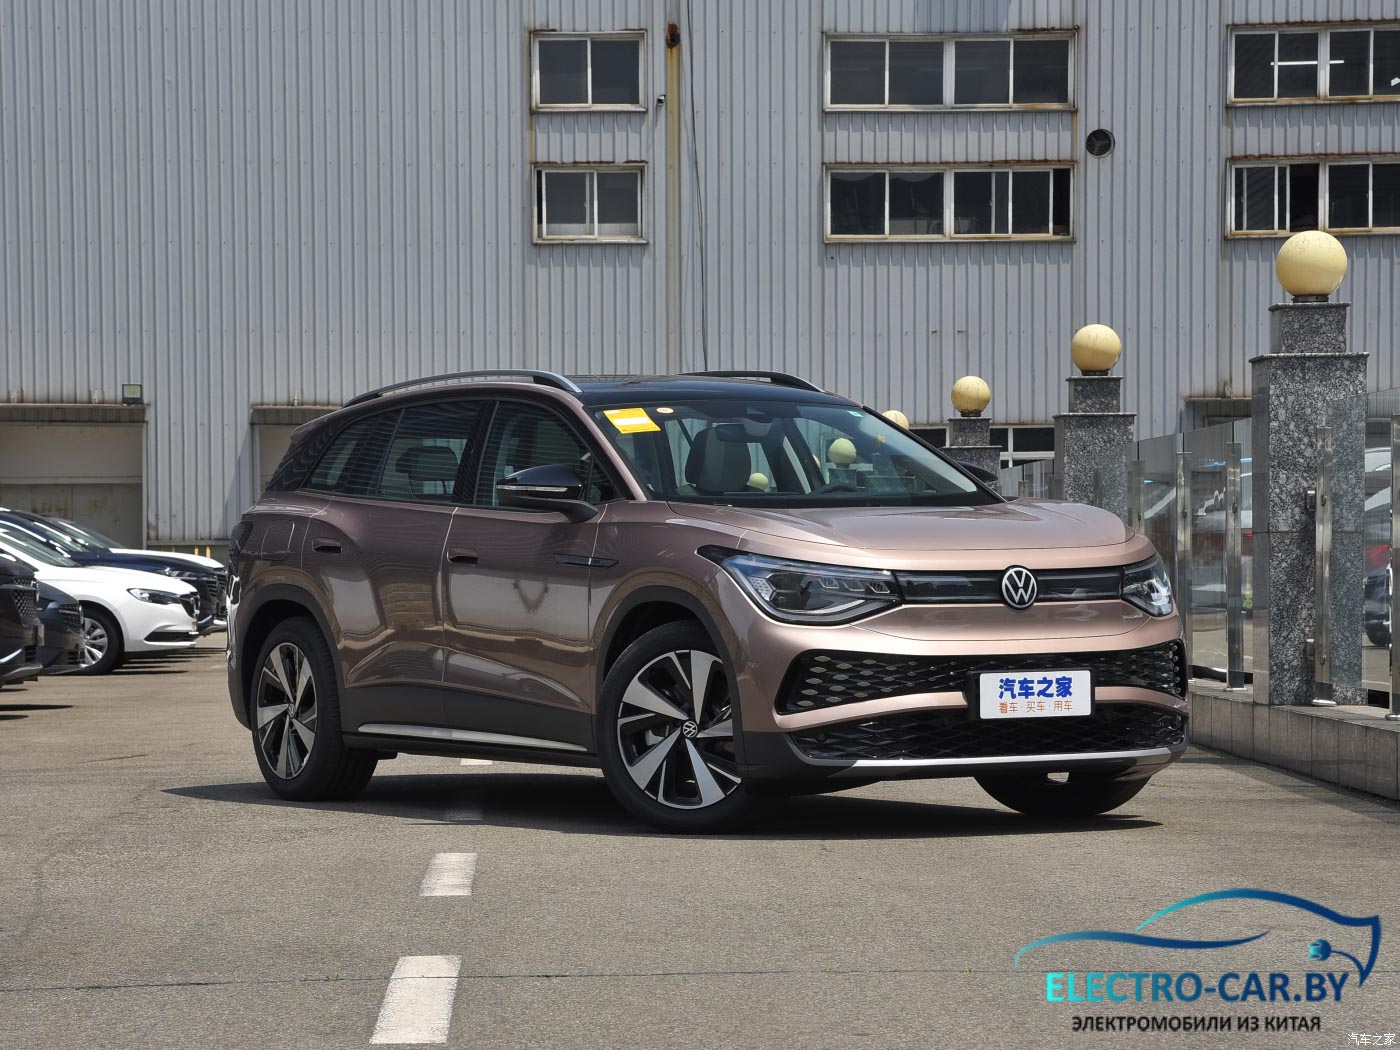 Купить Volkswagen ID 6 X 2022 по выгодной цене из Китая.